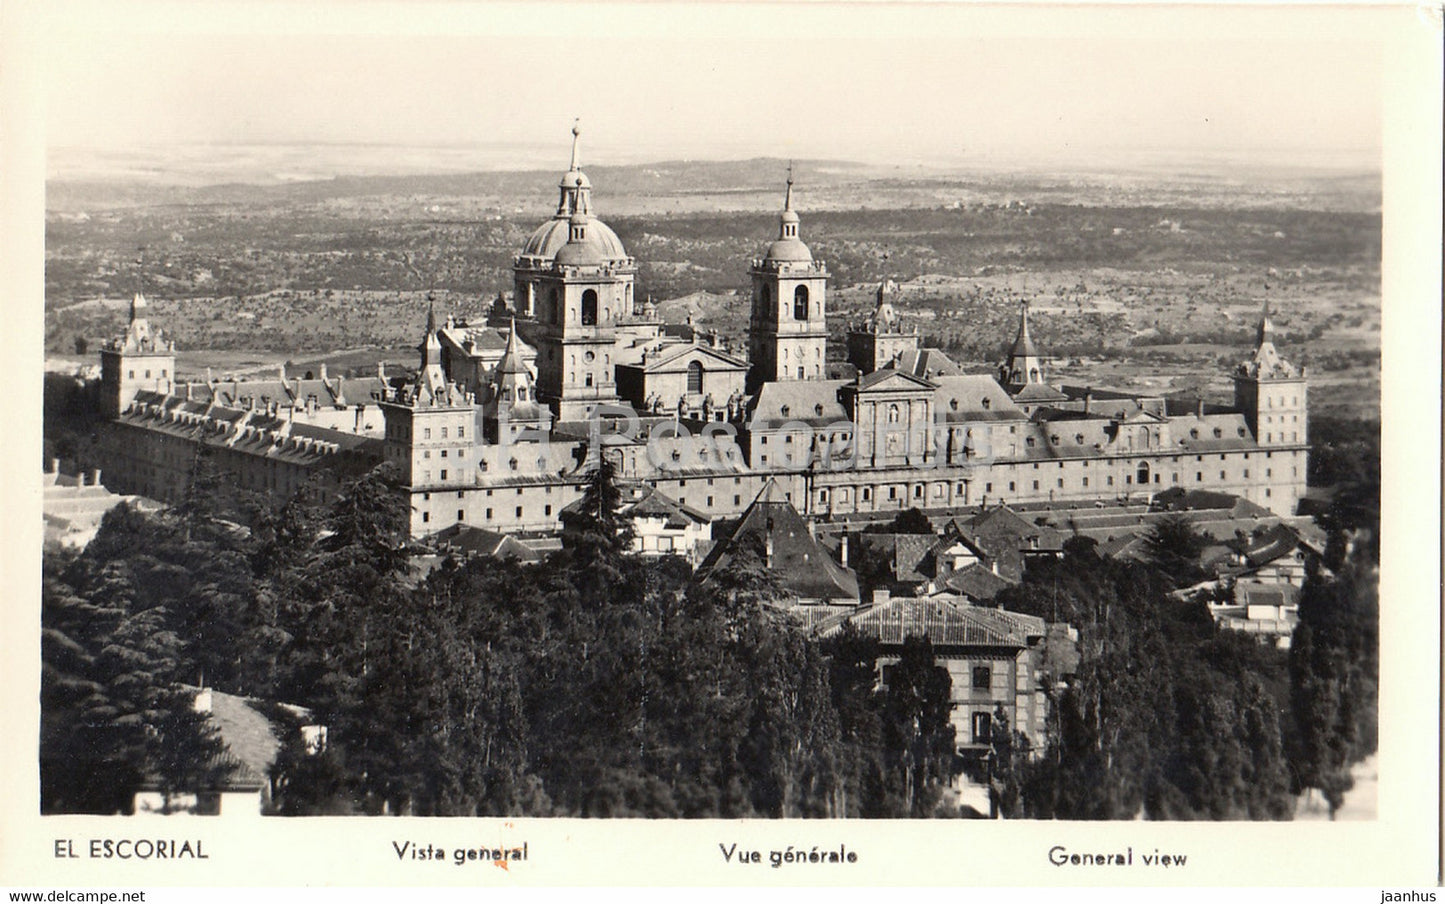 El Escorial - general view - old postcard - Spain - unused - JH Postcards